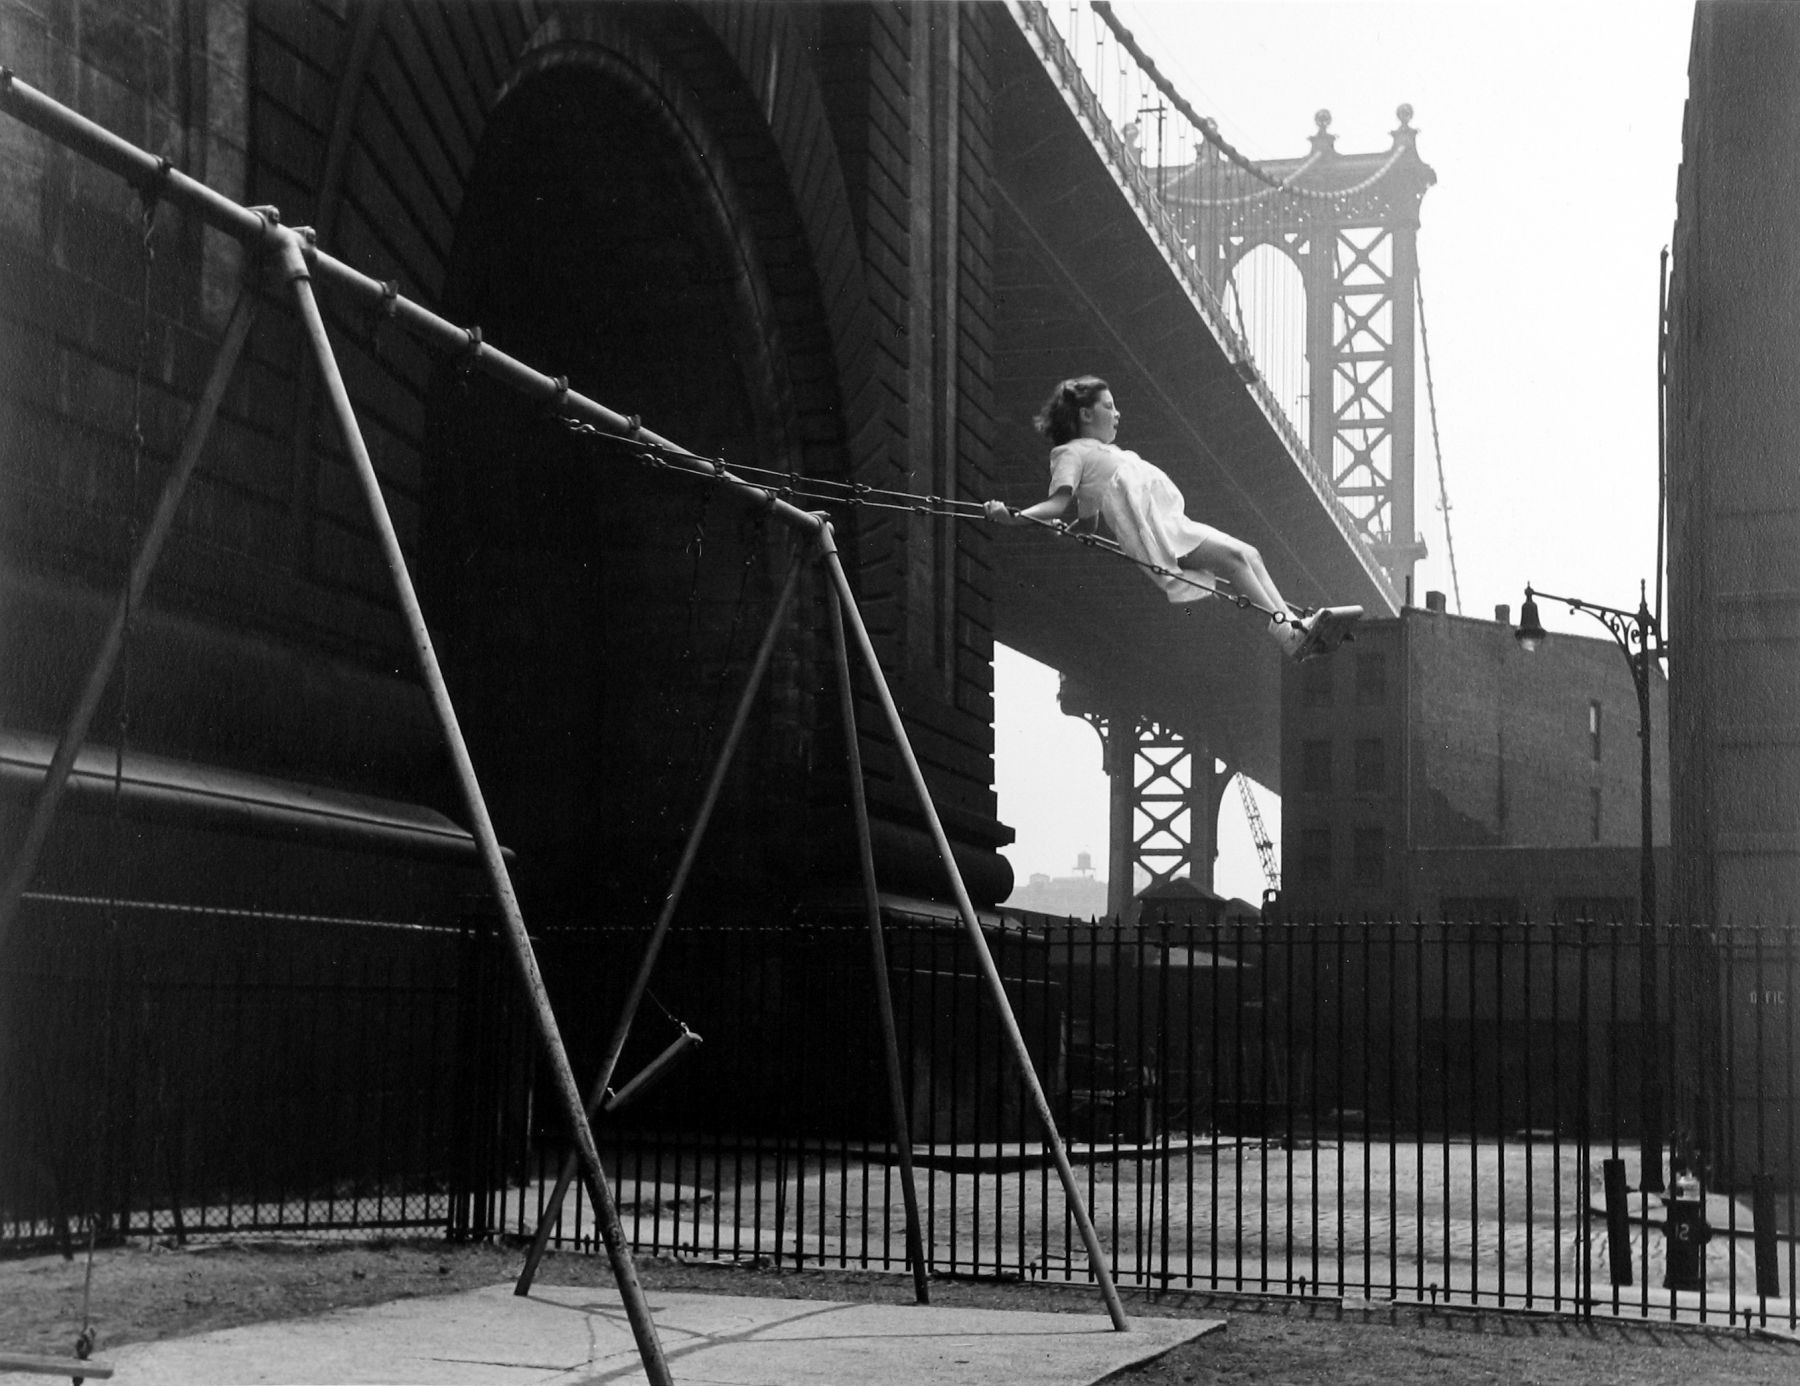 Девочка на качелях, Питт-стрит, Нью-Йорк, 1938. Фотограф Уолтер Розенблюм